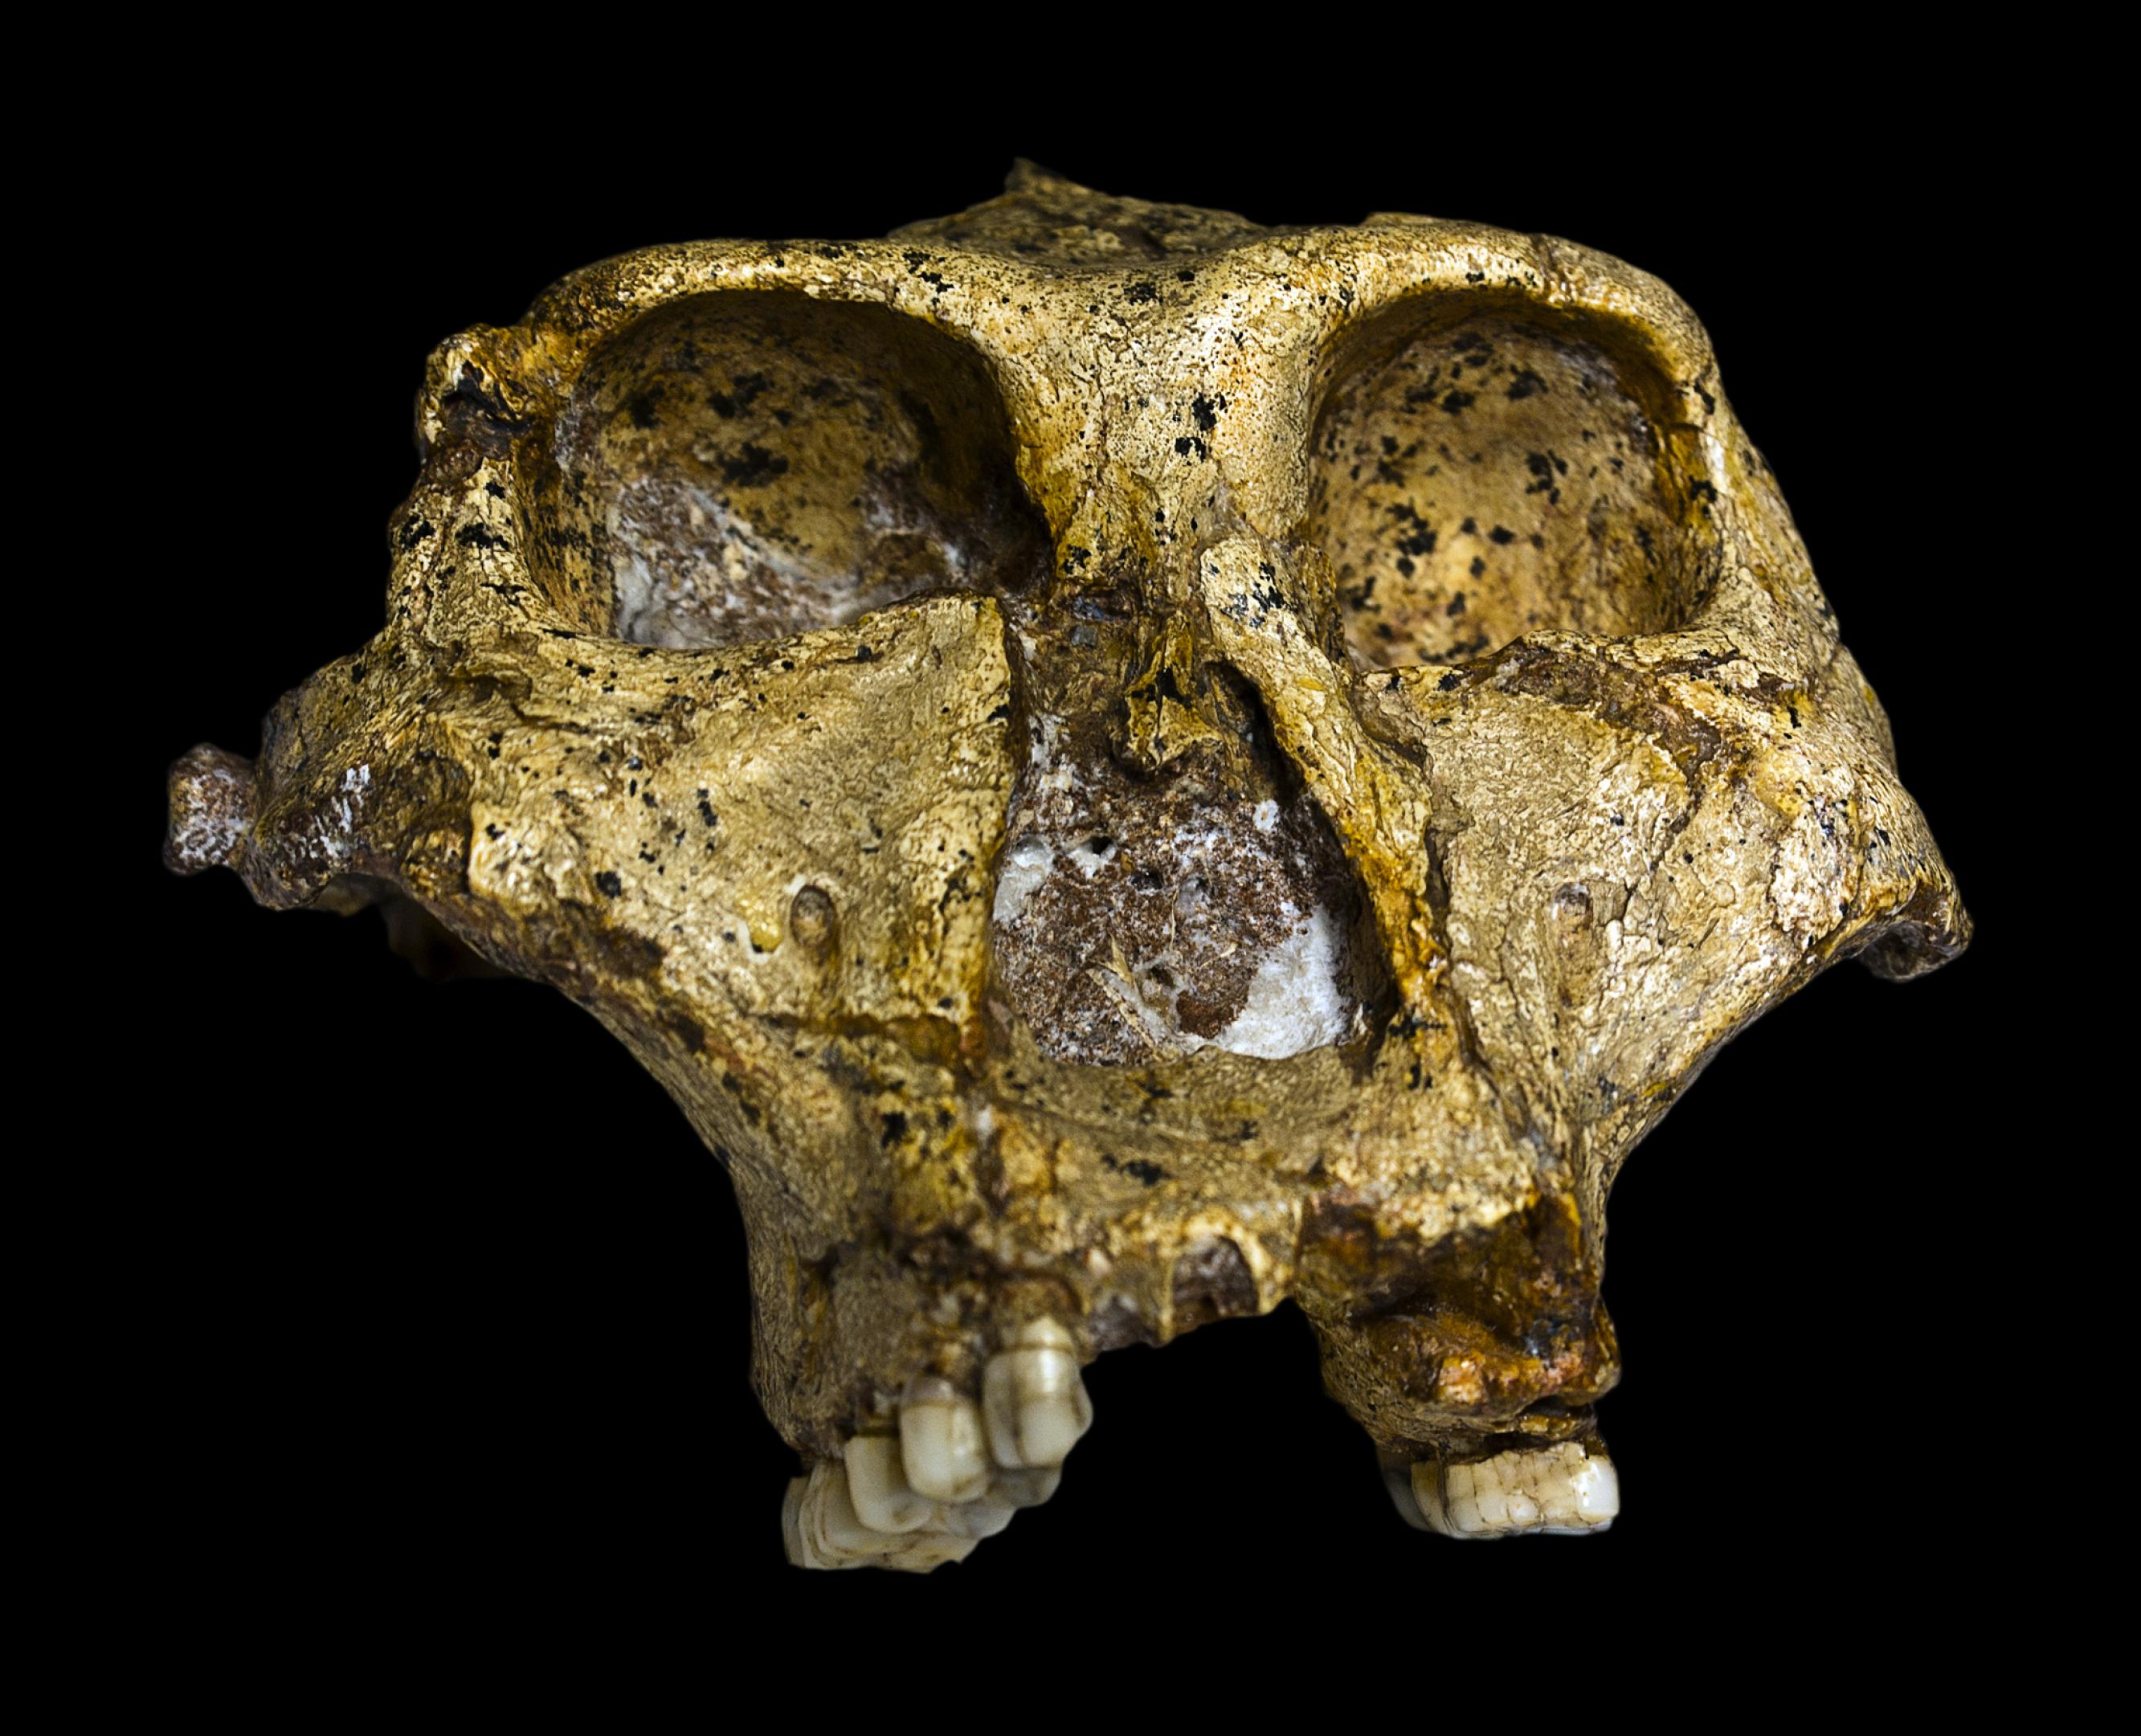 Dieser Schädel des 1938 entdeckten Paranthropus robustus lässt erkennen, dass das Wesen riesige Zähne, aber aber nur ein bescheidenes Gehirn besaß. Es handelt sich um einen aufrecht gehenden Verwandten des Menschen, der heute aber einer ausgestorbenen Seitenlinie zugeordnet wird.